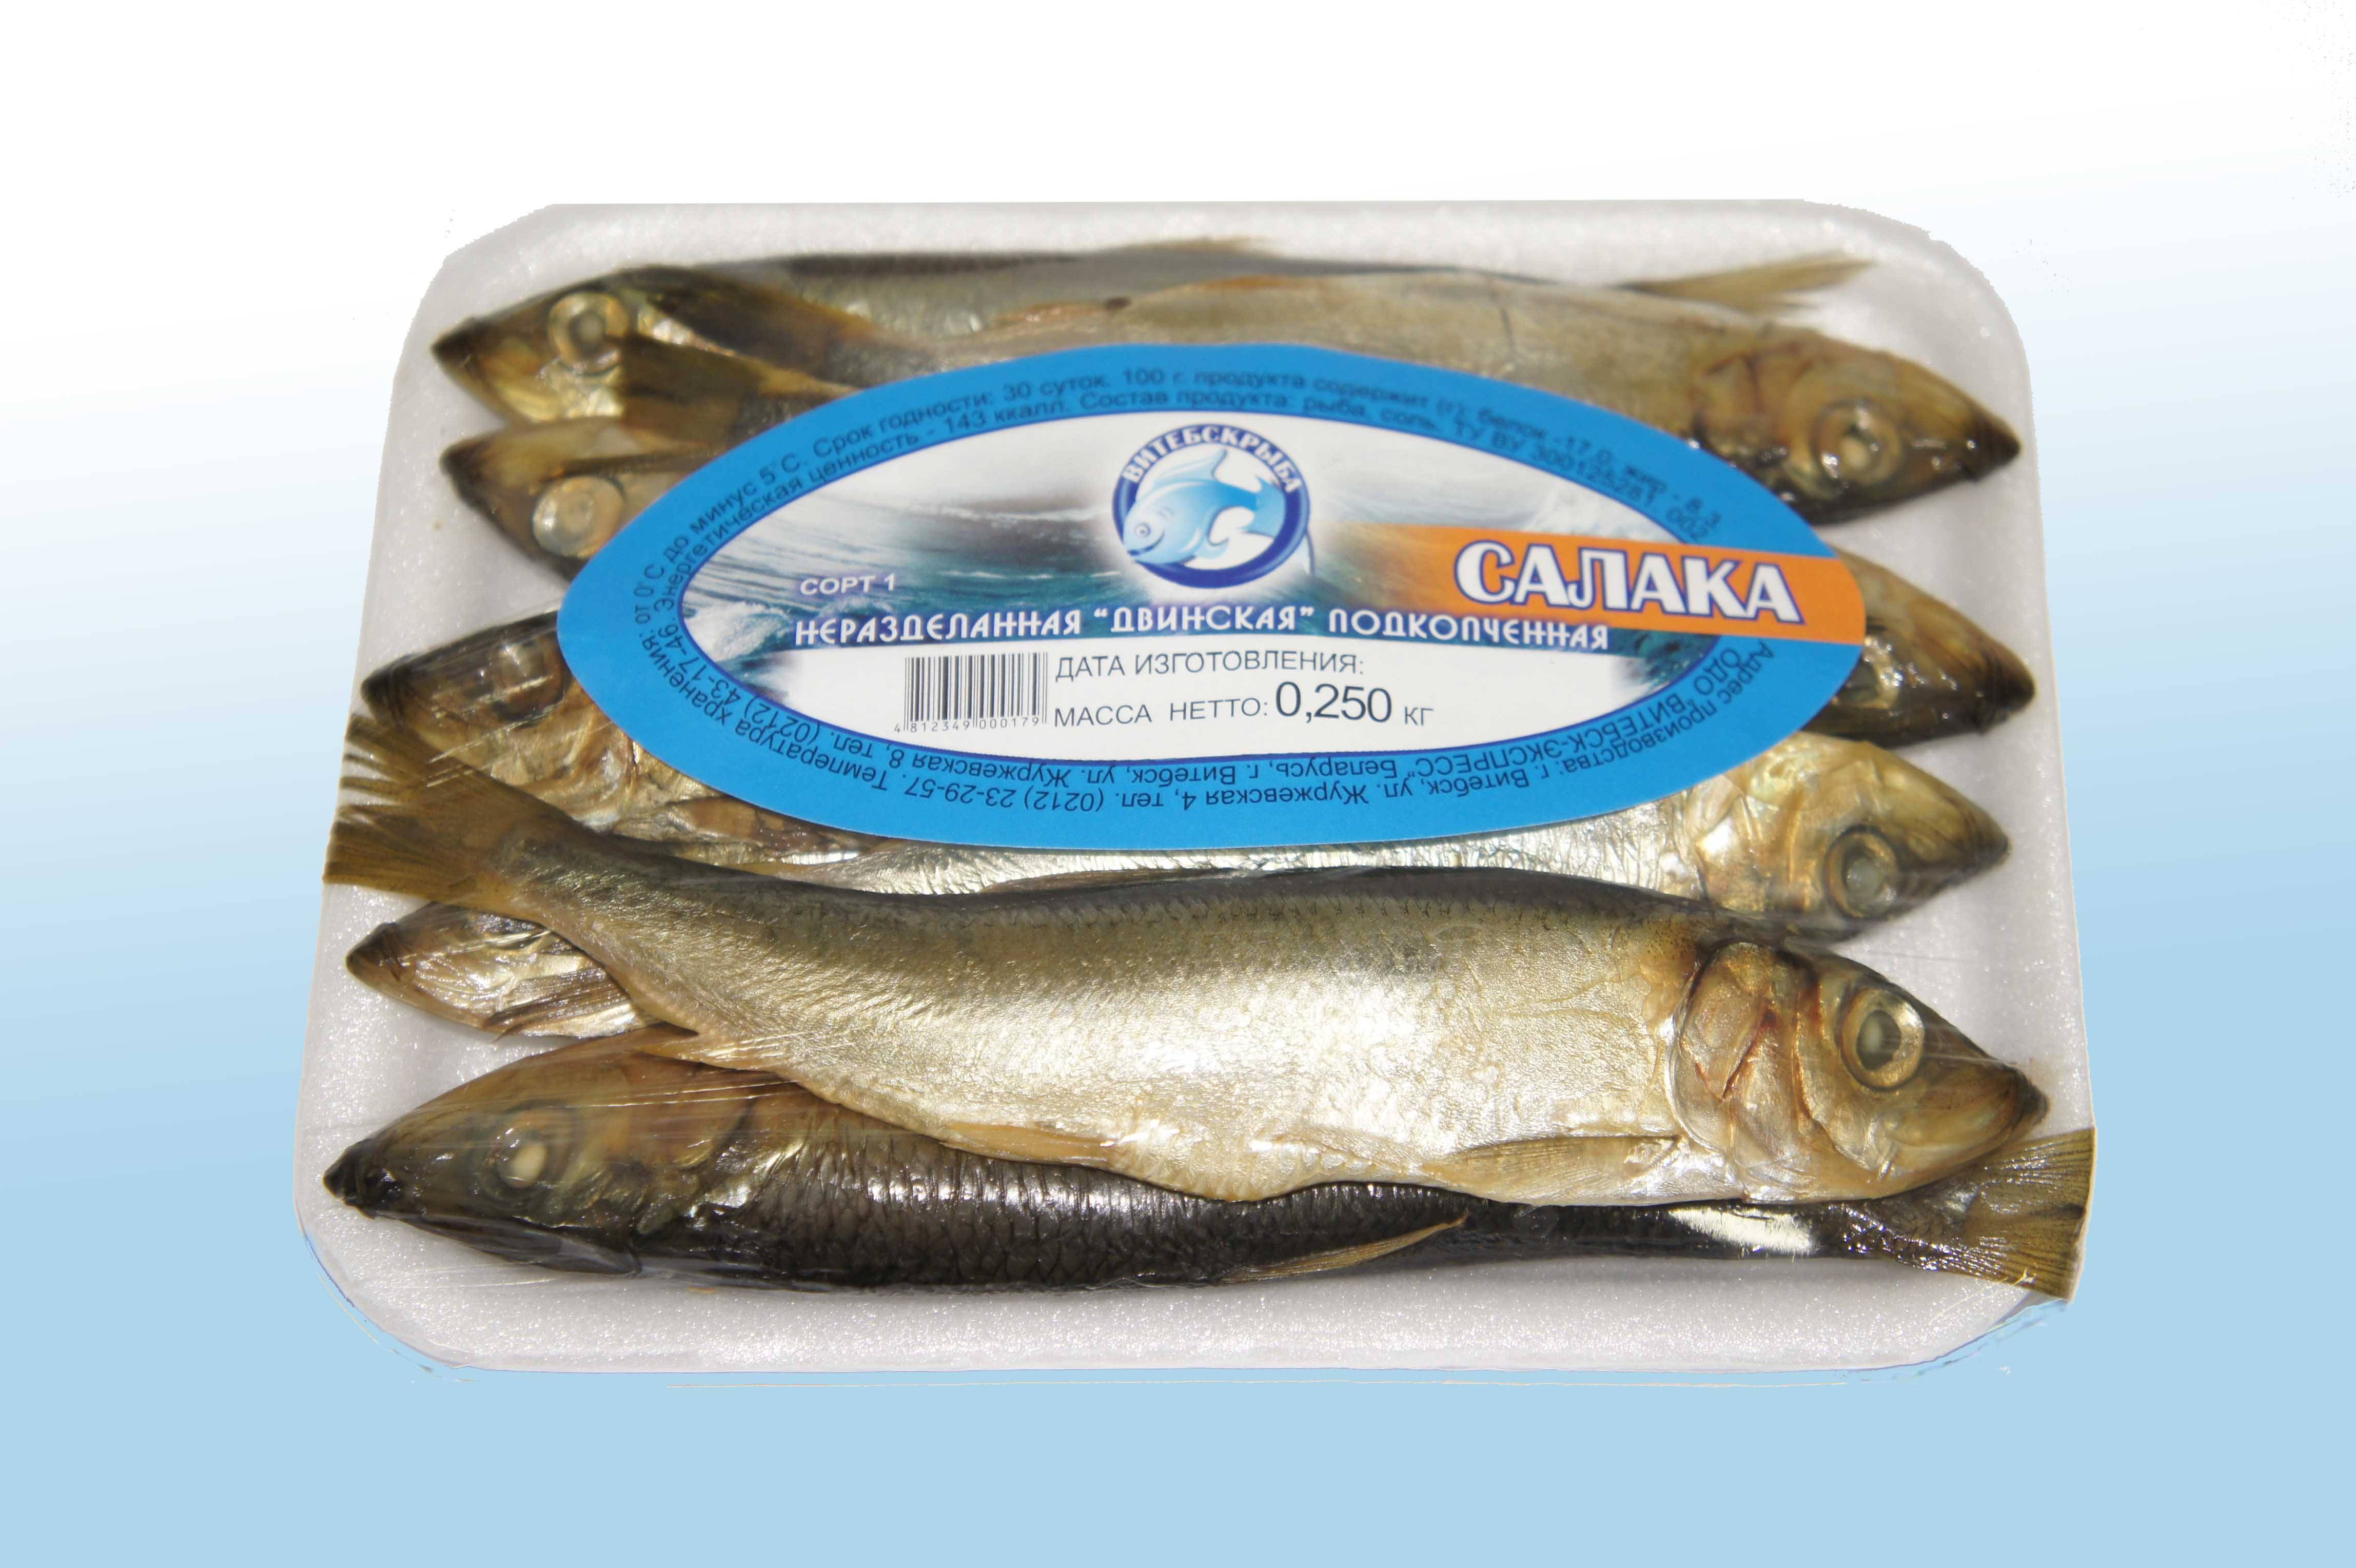 Рыба салака: польза и вред для организма, калорийность, рецепты приготовления в домашних условиях